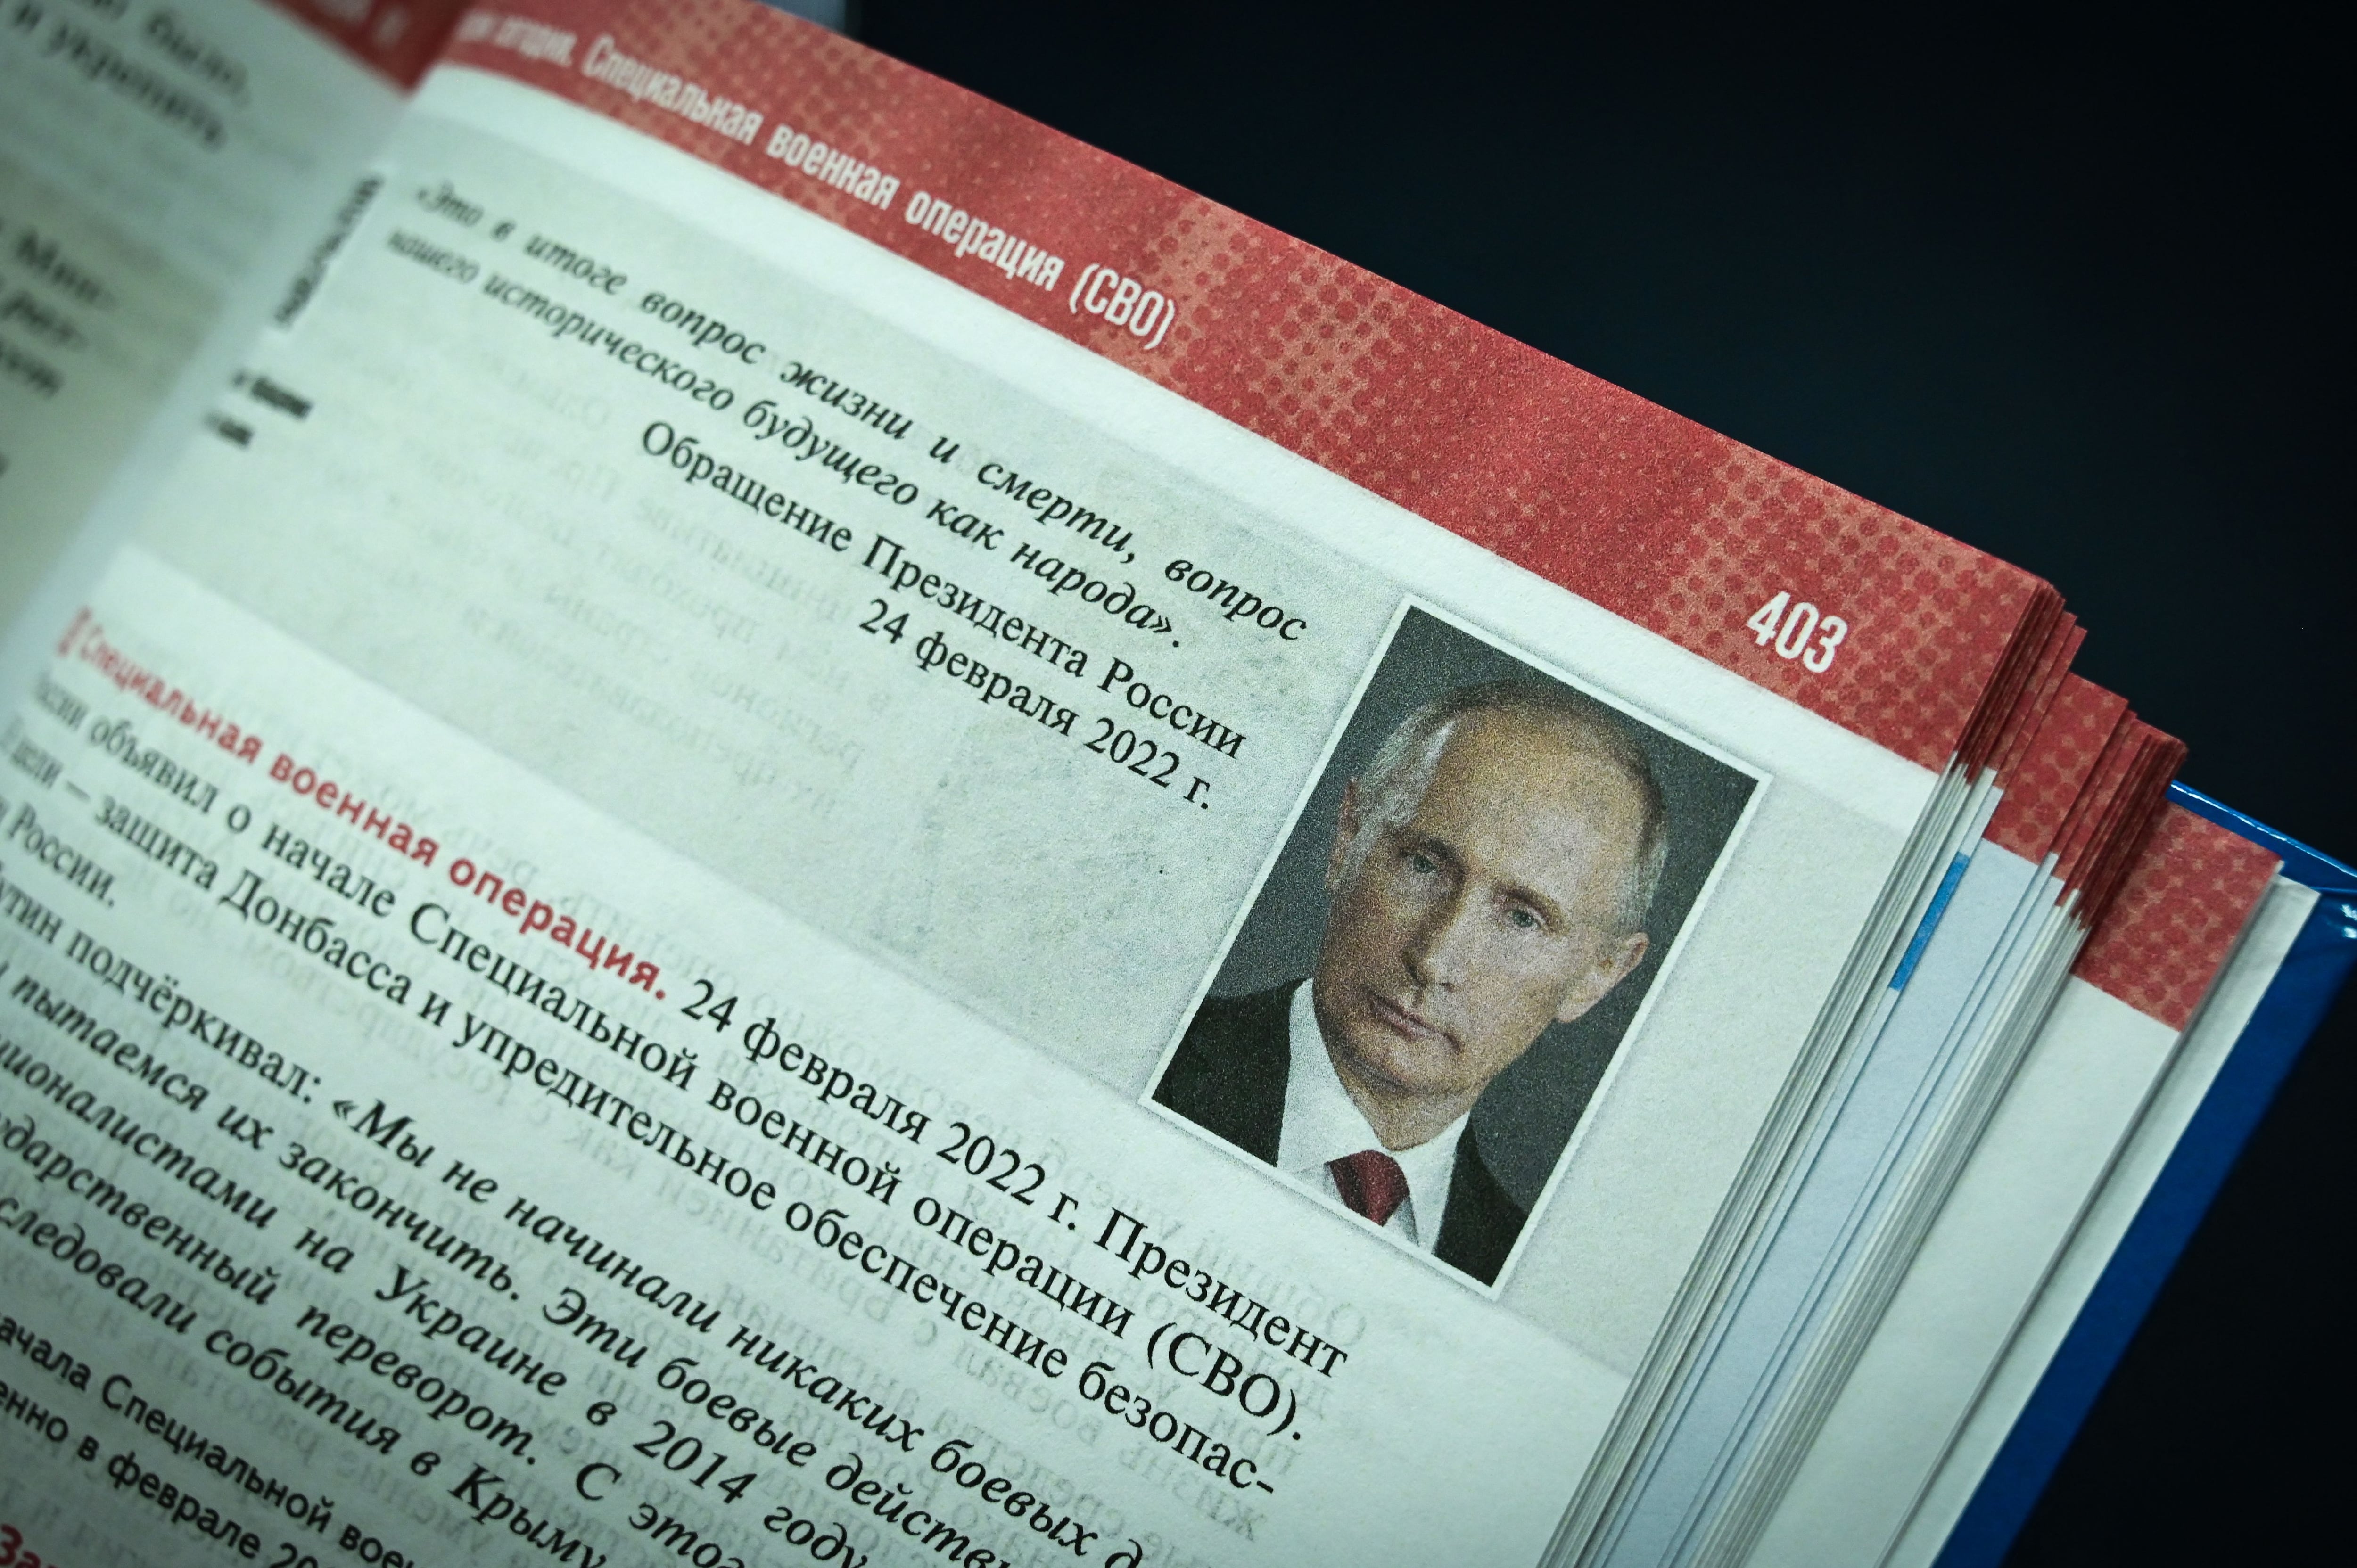 Retrato de Vladimir Putin en el libro escolar (AFP)